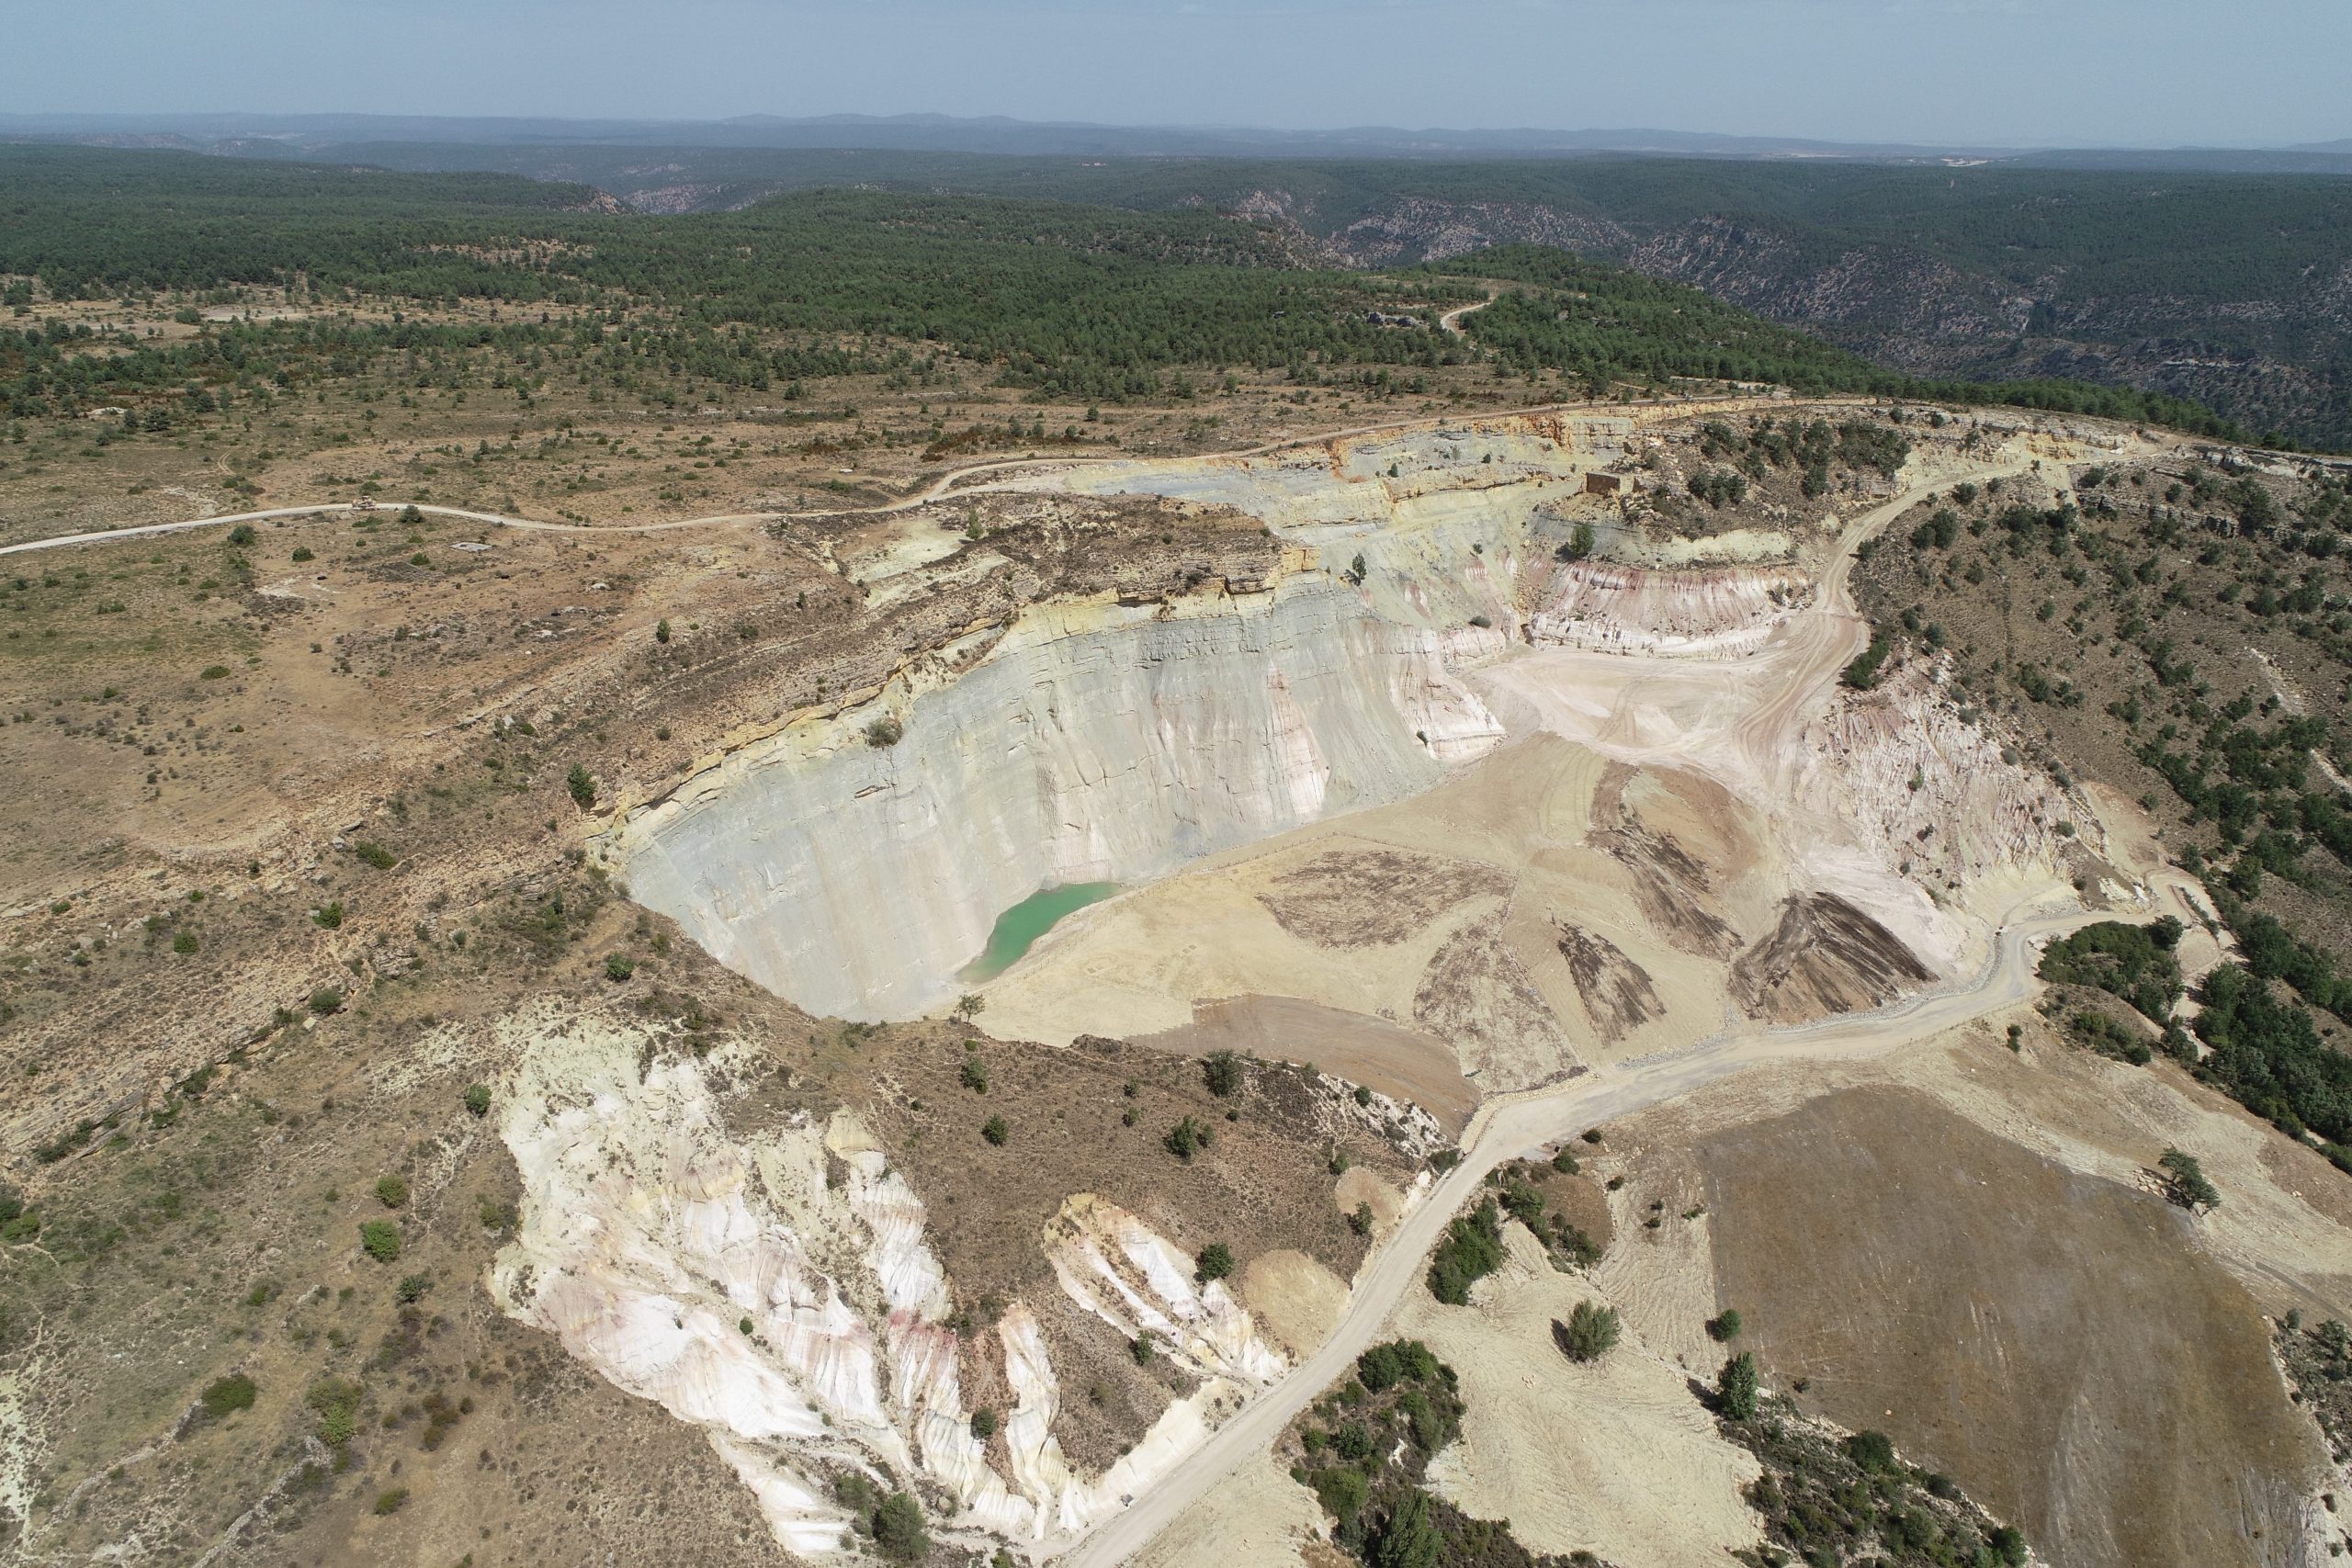 ¡Los trabajos en la mina Santa Engracia continúan a excelente ritmo!